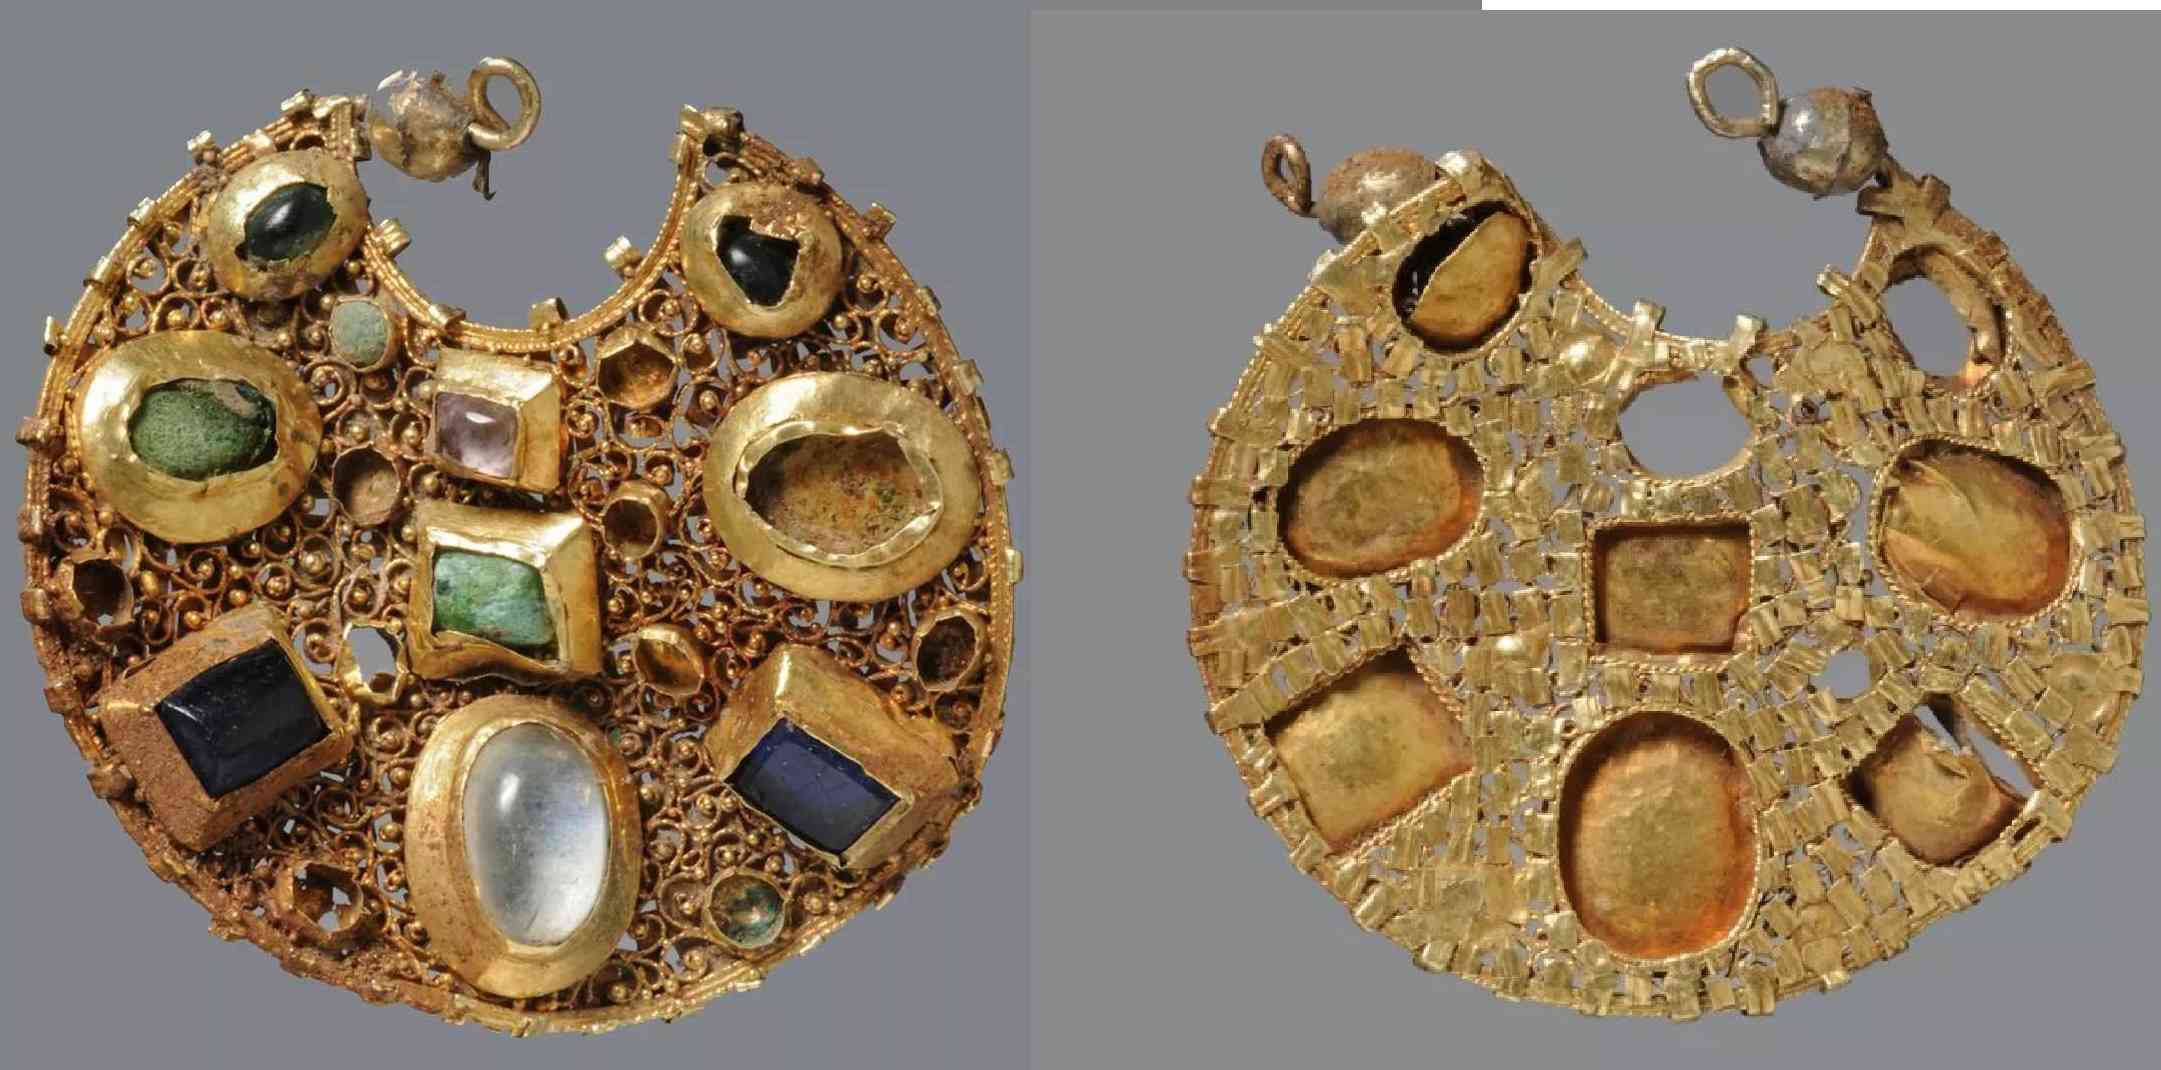 Timbunan Emas Berusia 800 Tahun dengan Anting Menakjubkan Ditemukan di Jerman